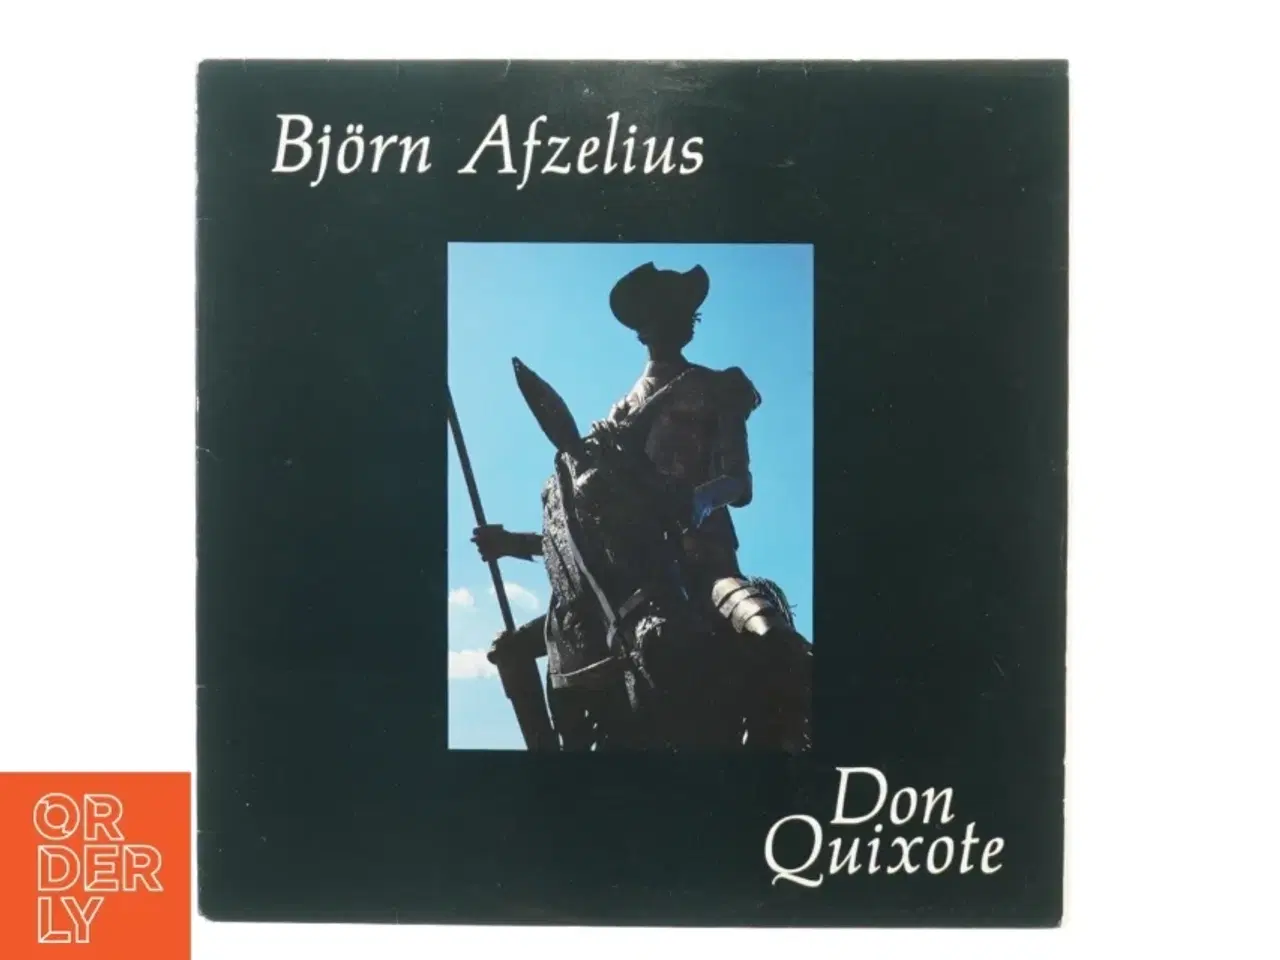 Billede 1 - Bjørn Afzeliusm, Don Quixote fra Rebelle (str. 30 cm)